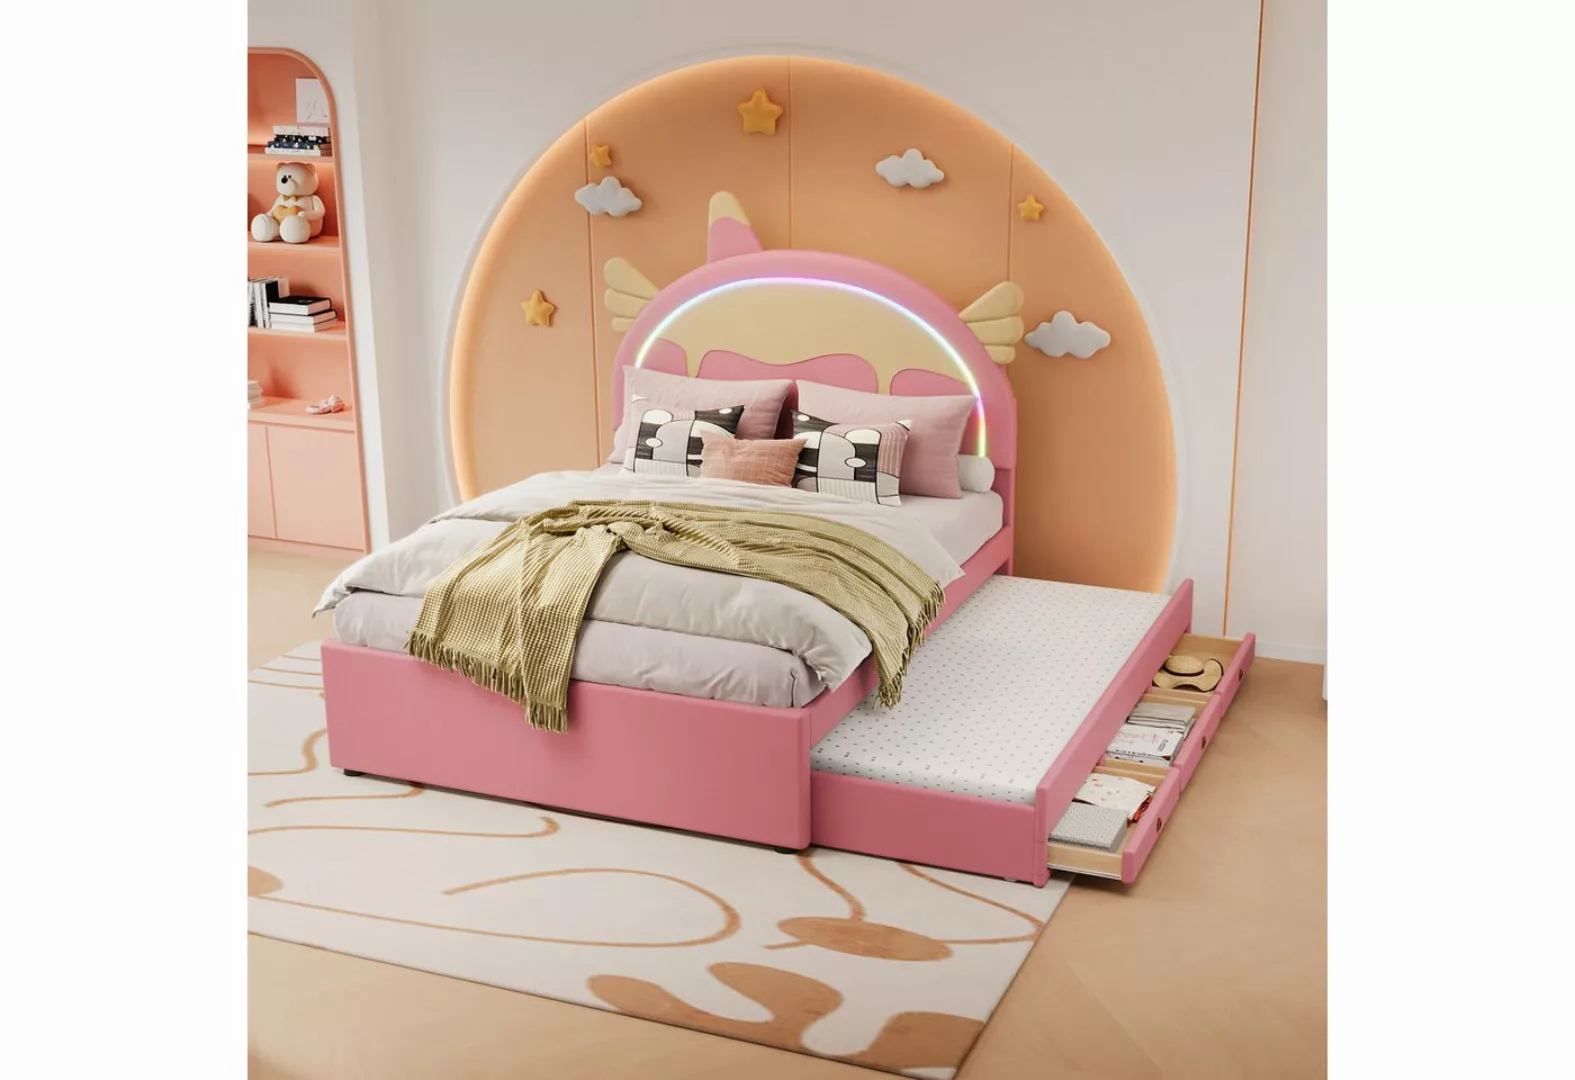 WISHDOR Kinderbett Einhornform, ausgestattet mit ausziehbares rollbett (140 günstig online kaufen